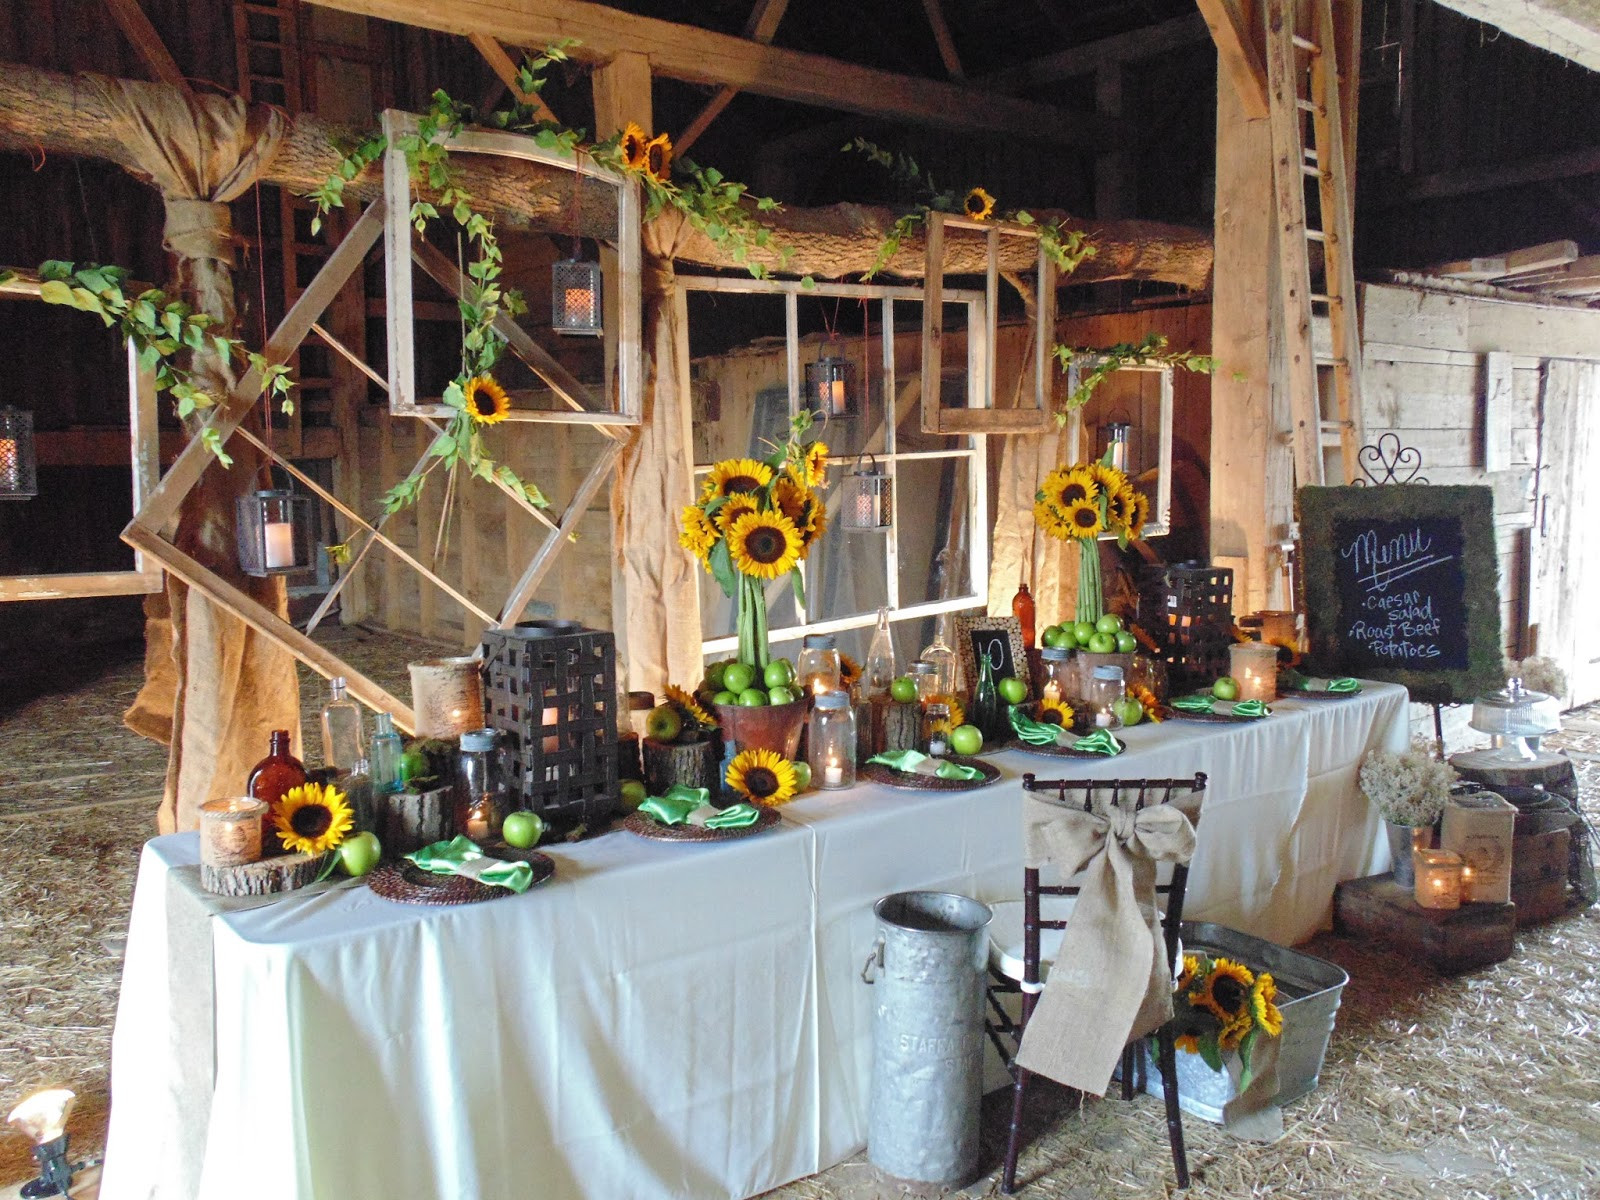 DIY Barn Wedding Decorations
 40 DIY Barn Wedding Ideas For A Country Flavored Celebration